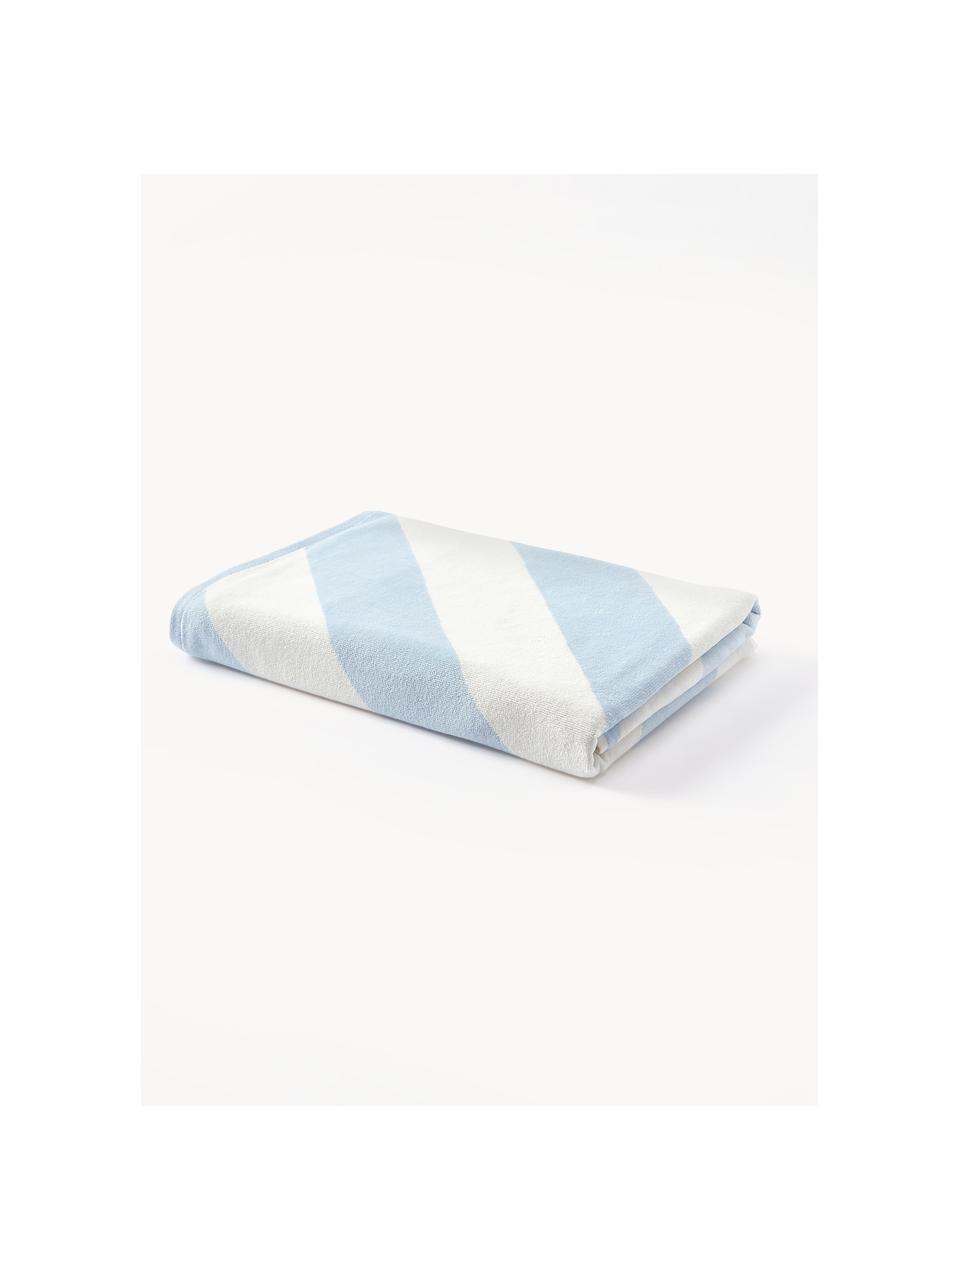 Fouta à motif zigzag Suri, Bleu ciel, blanc crème, larg. 90 x long. 170 cm